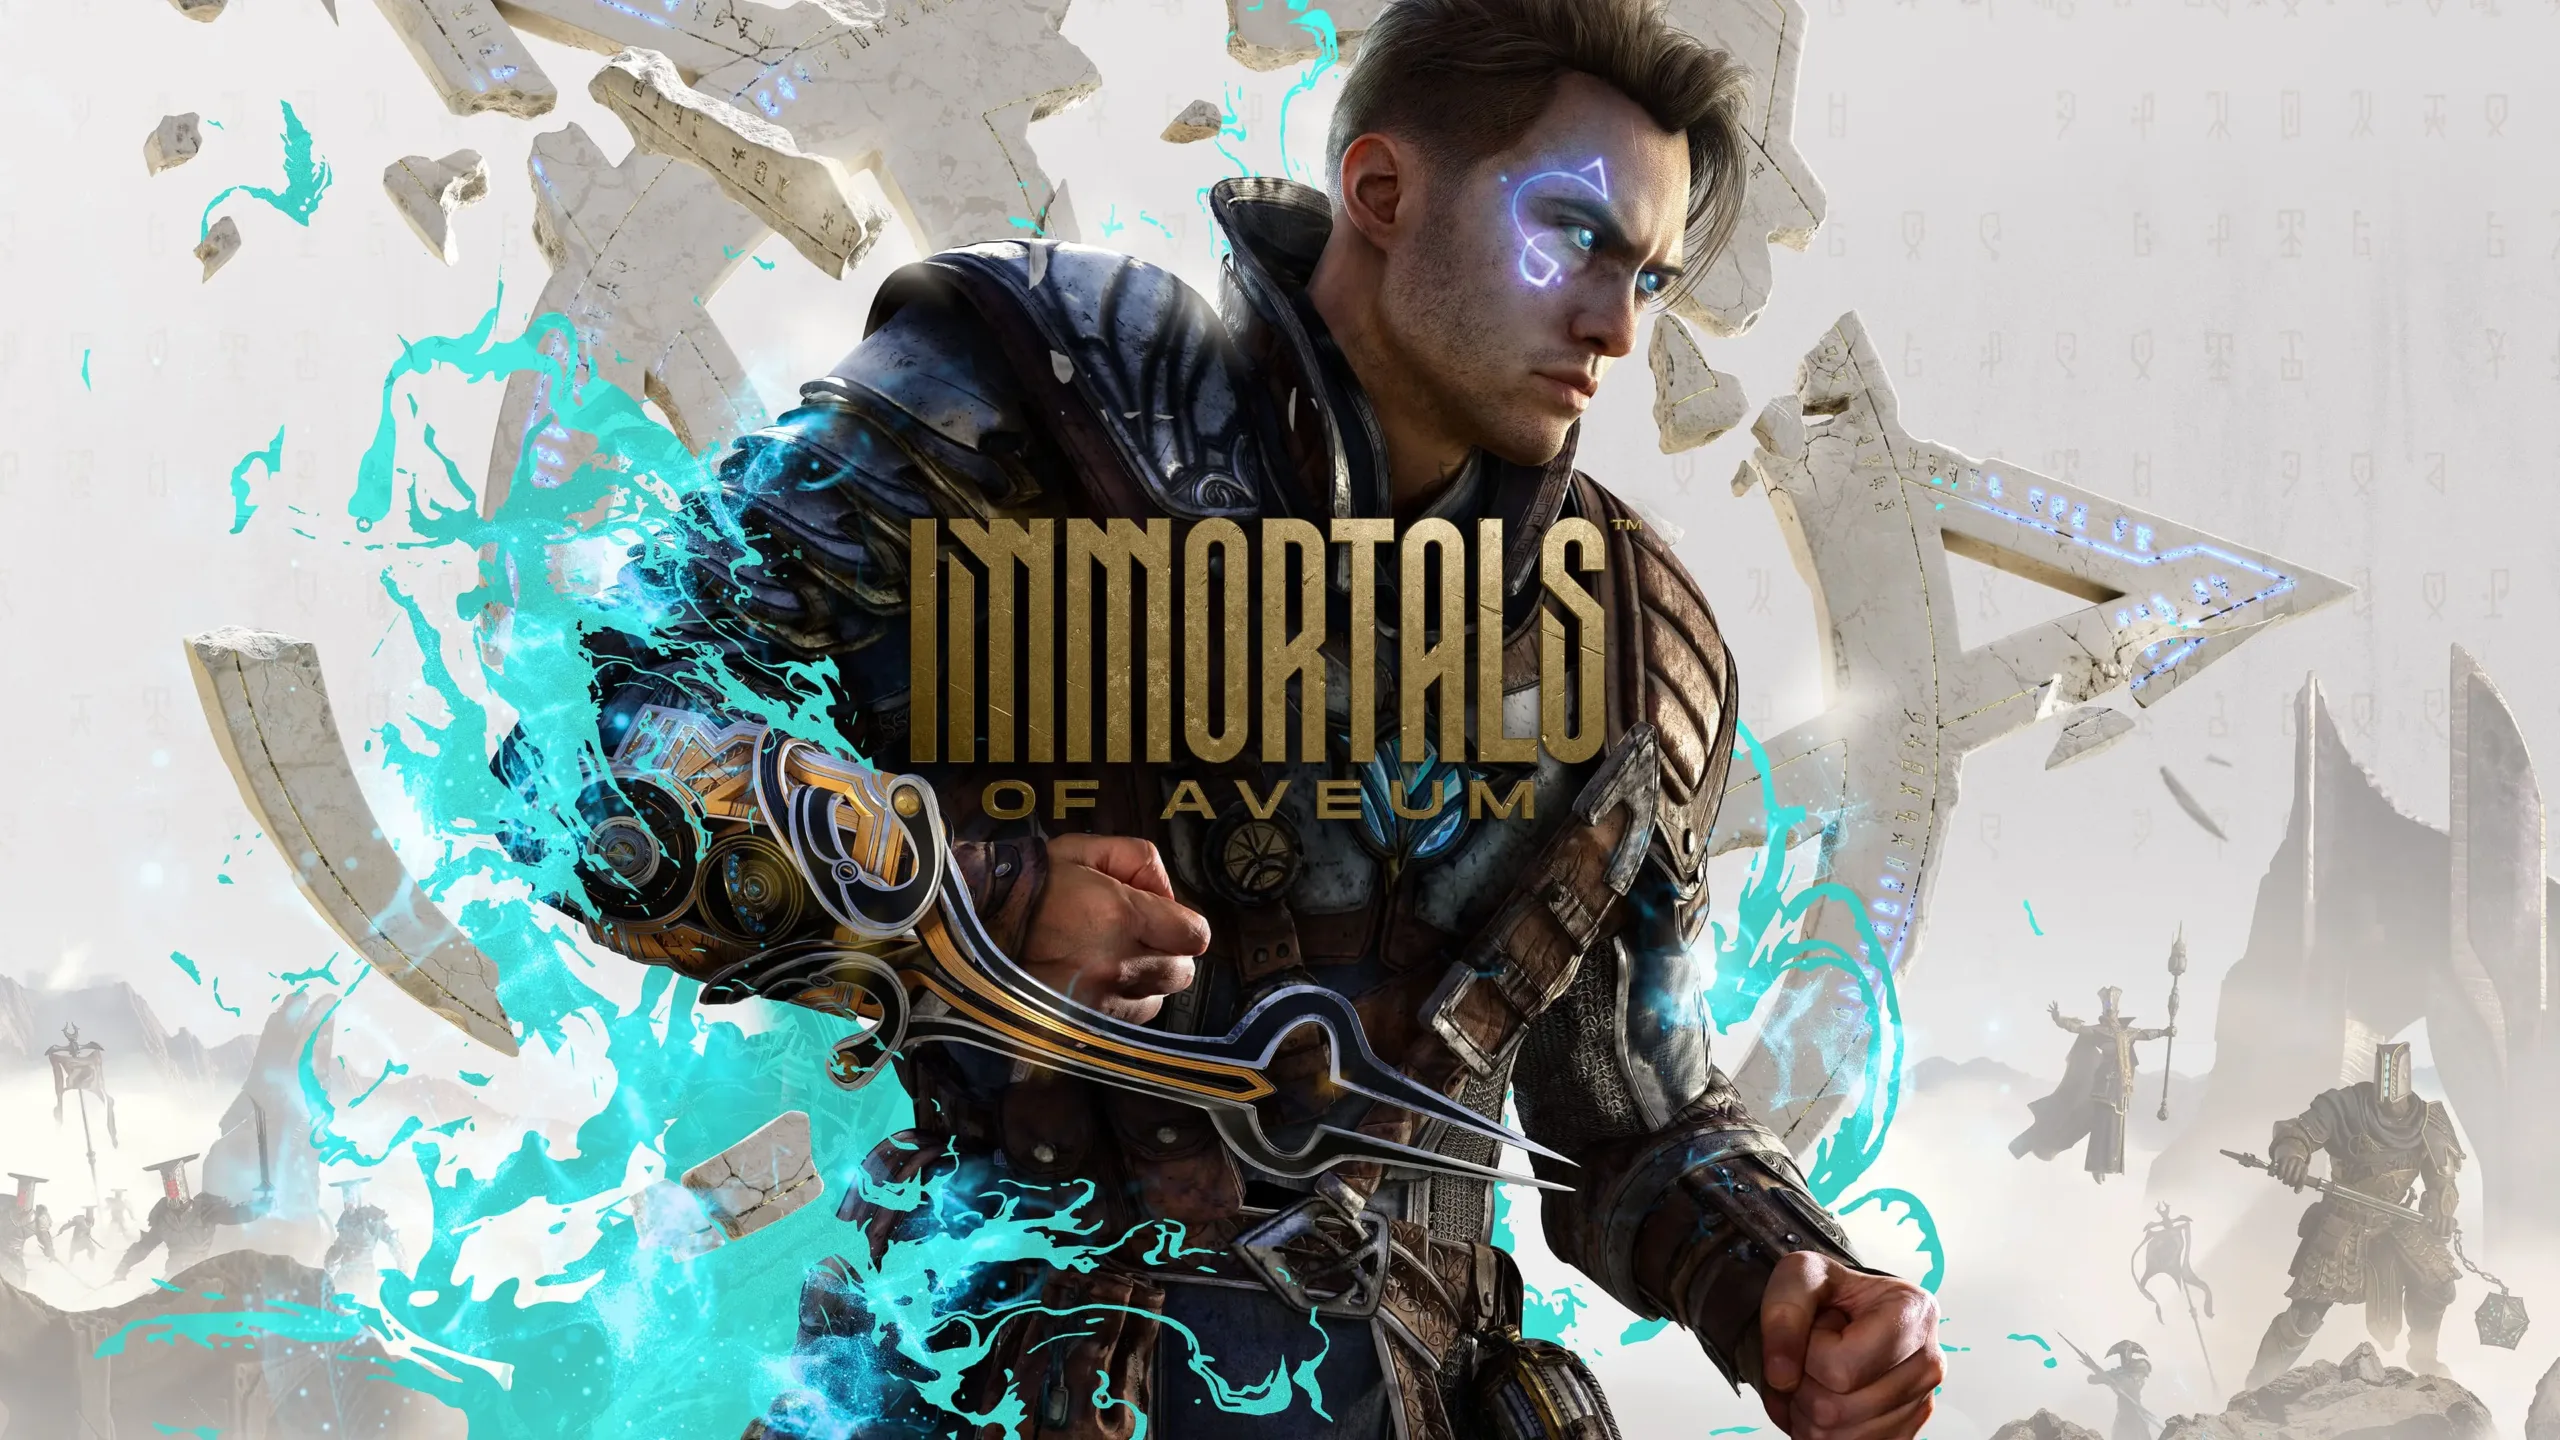 Análisis Immortals of Aveum PC: Explorando la Magia y la Acción en un Mundo Fantástico